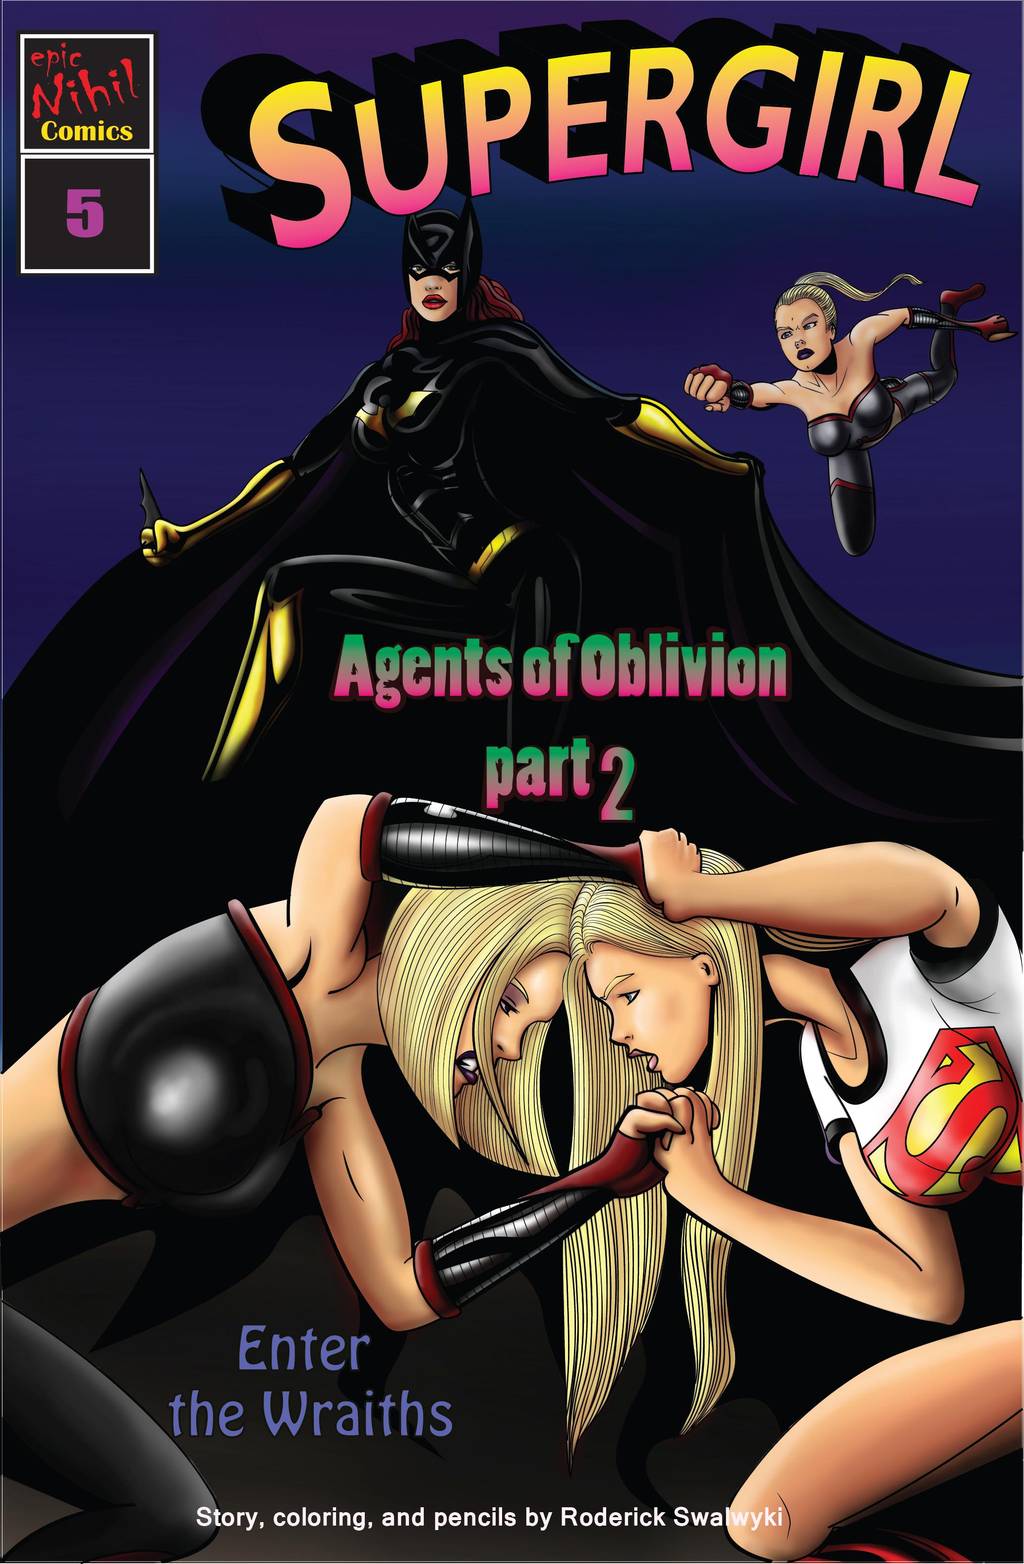 Cartoon Porn Oblivion - Supergirl- Agents of Oblivion Part 2 free Porn Comic - HD Porn Comics